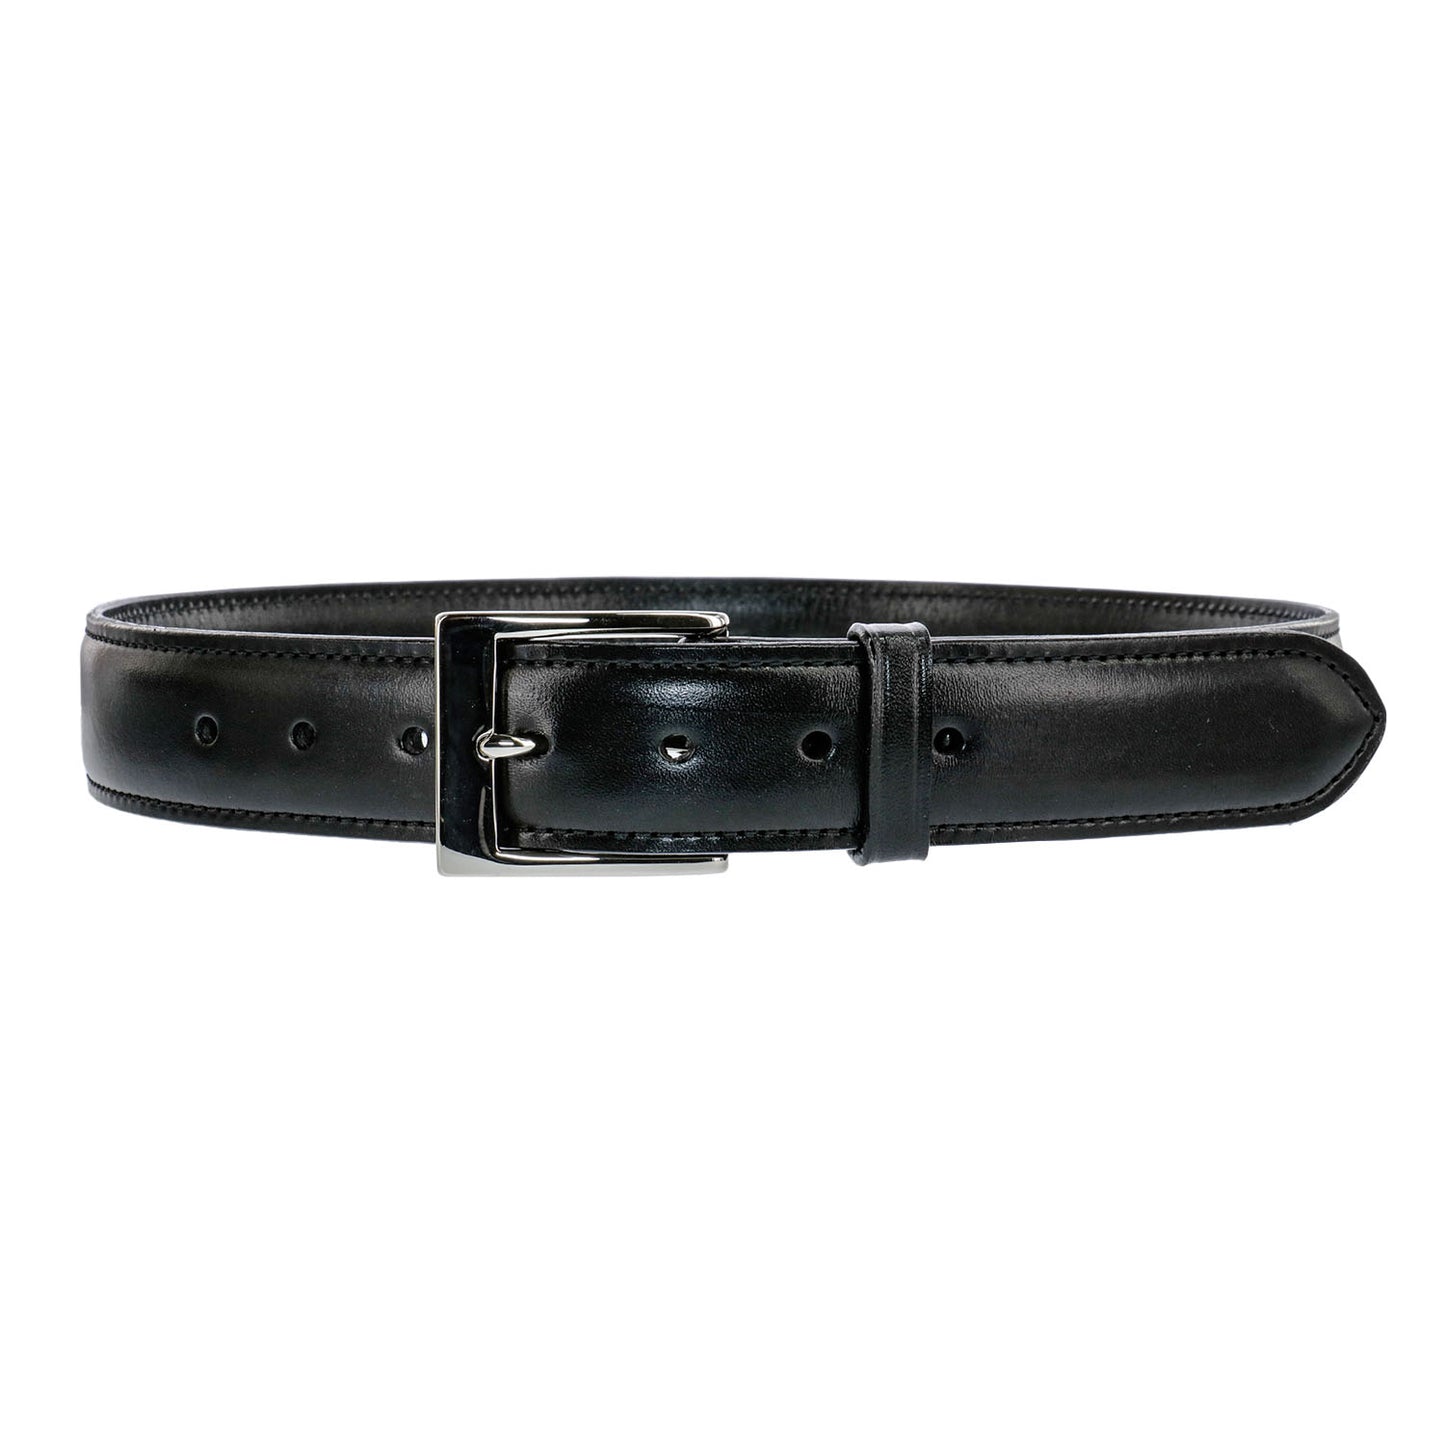 Galco SB3 1.5" Dress Holster Belt